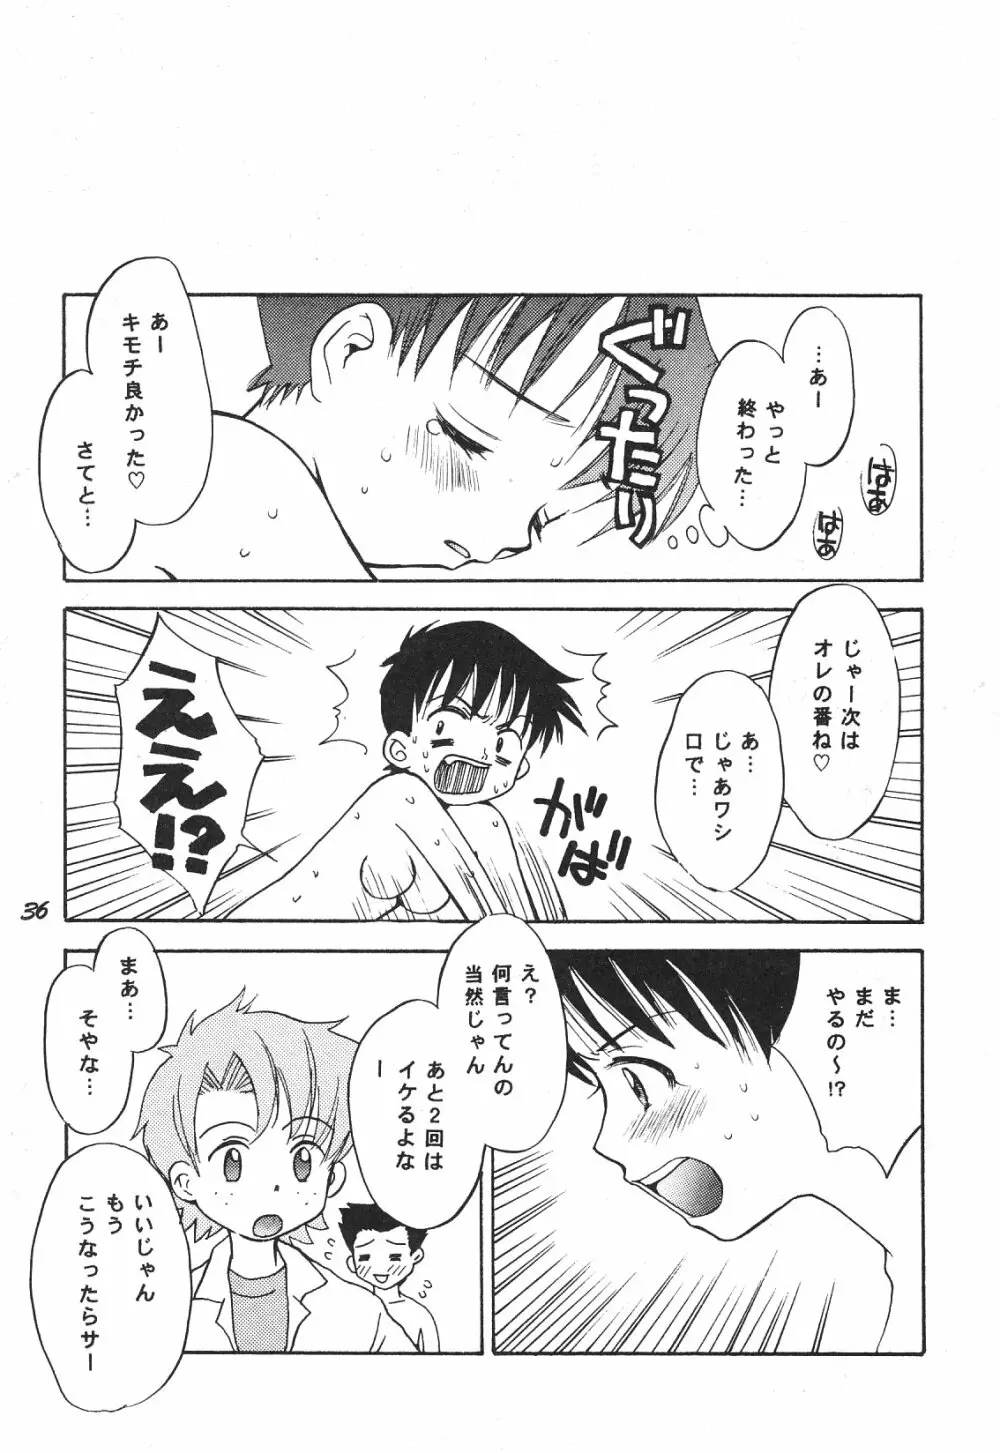 Maniac Juice 女シンジ再録集 '96-'99 - page36